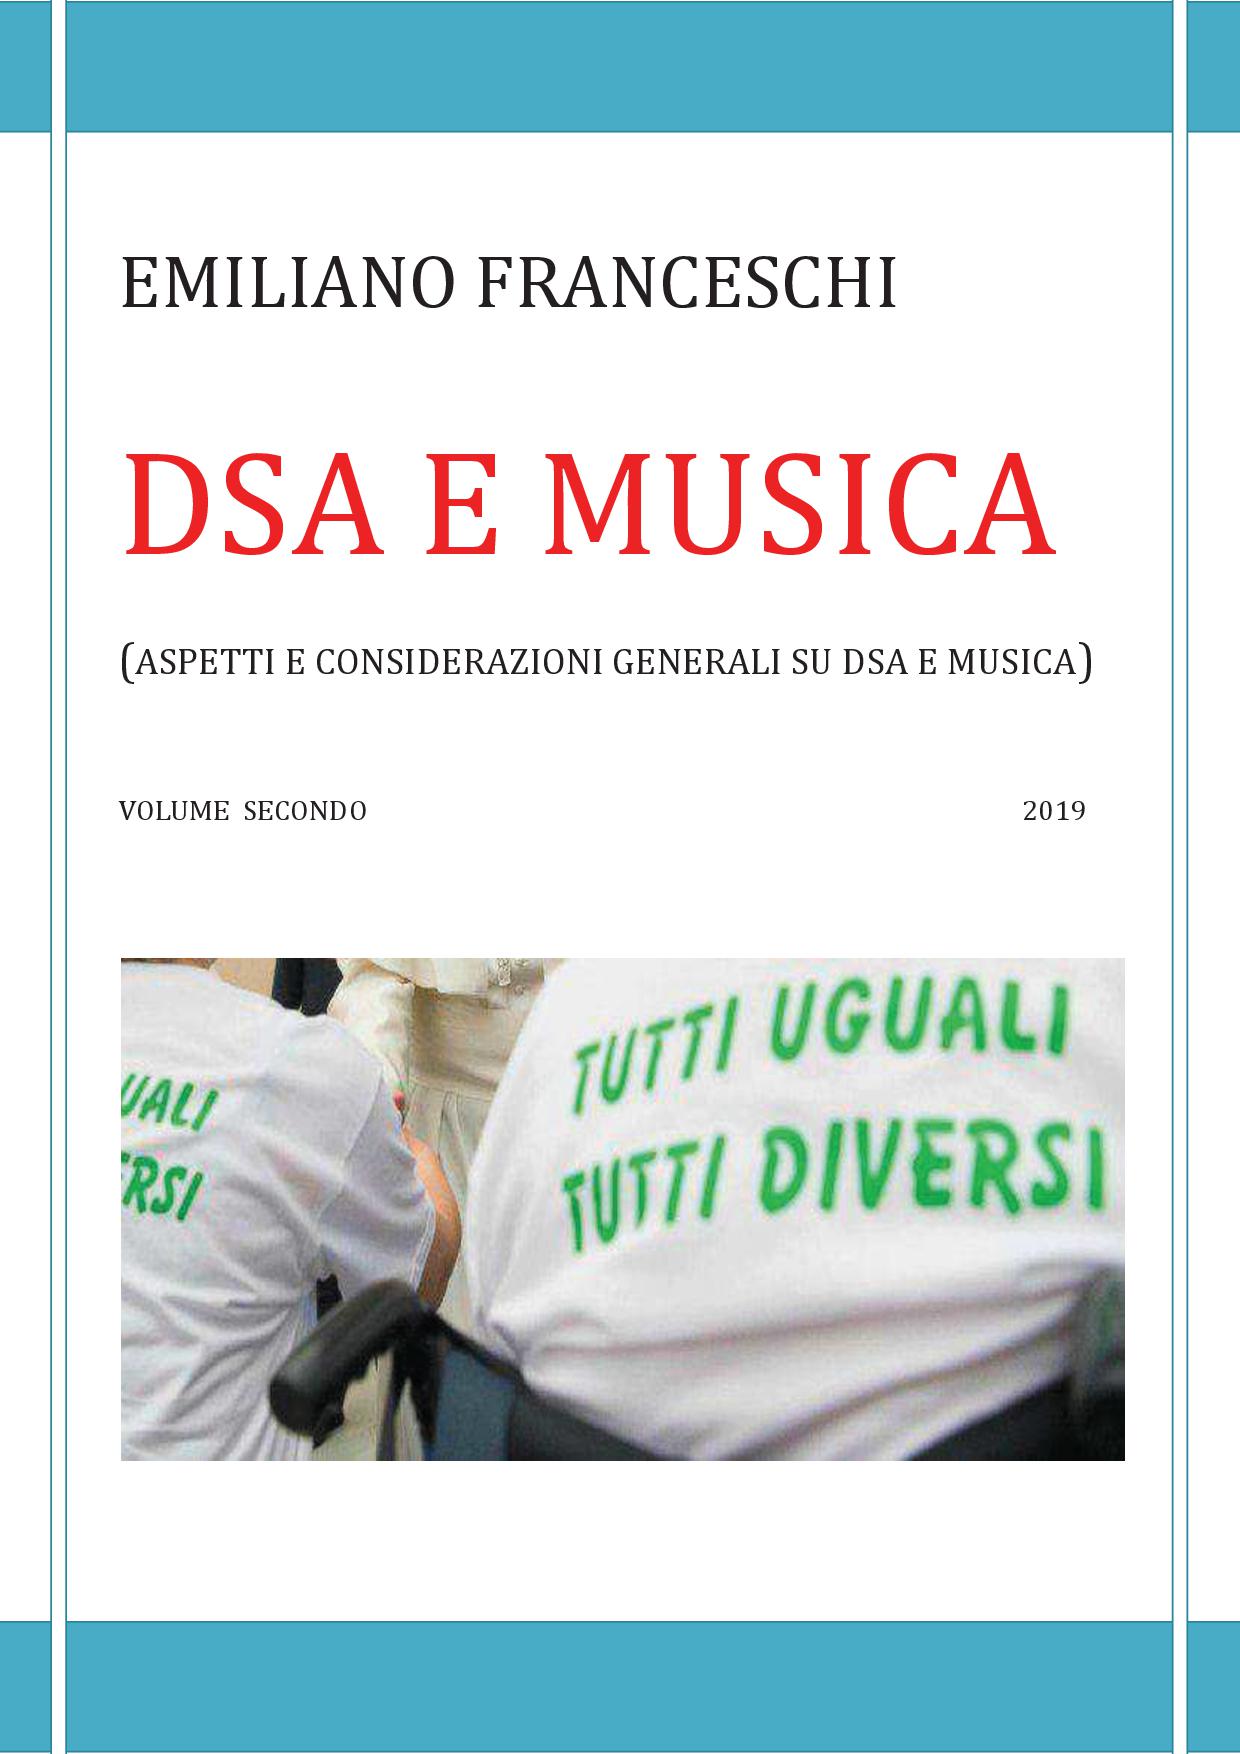 DSA e musica vol. 2